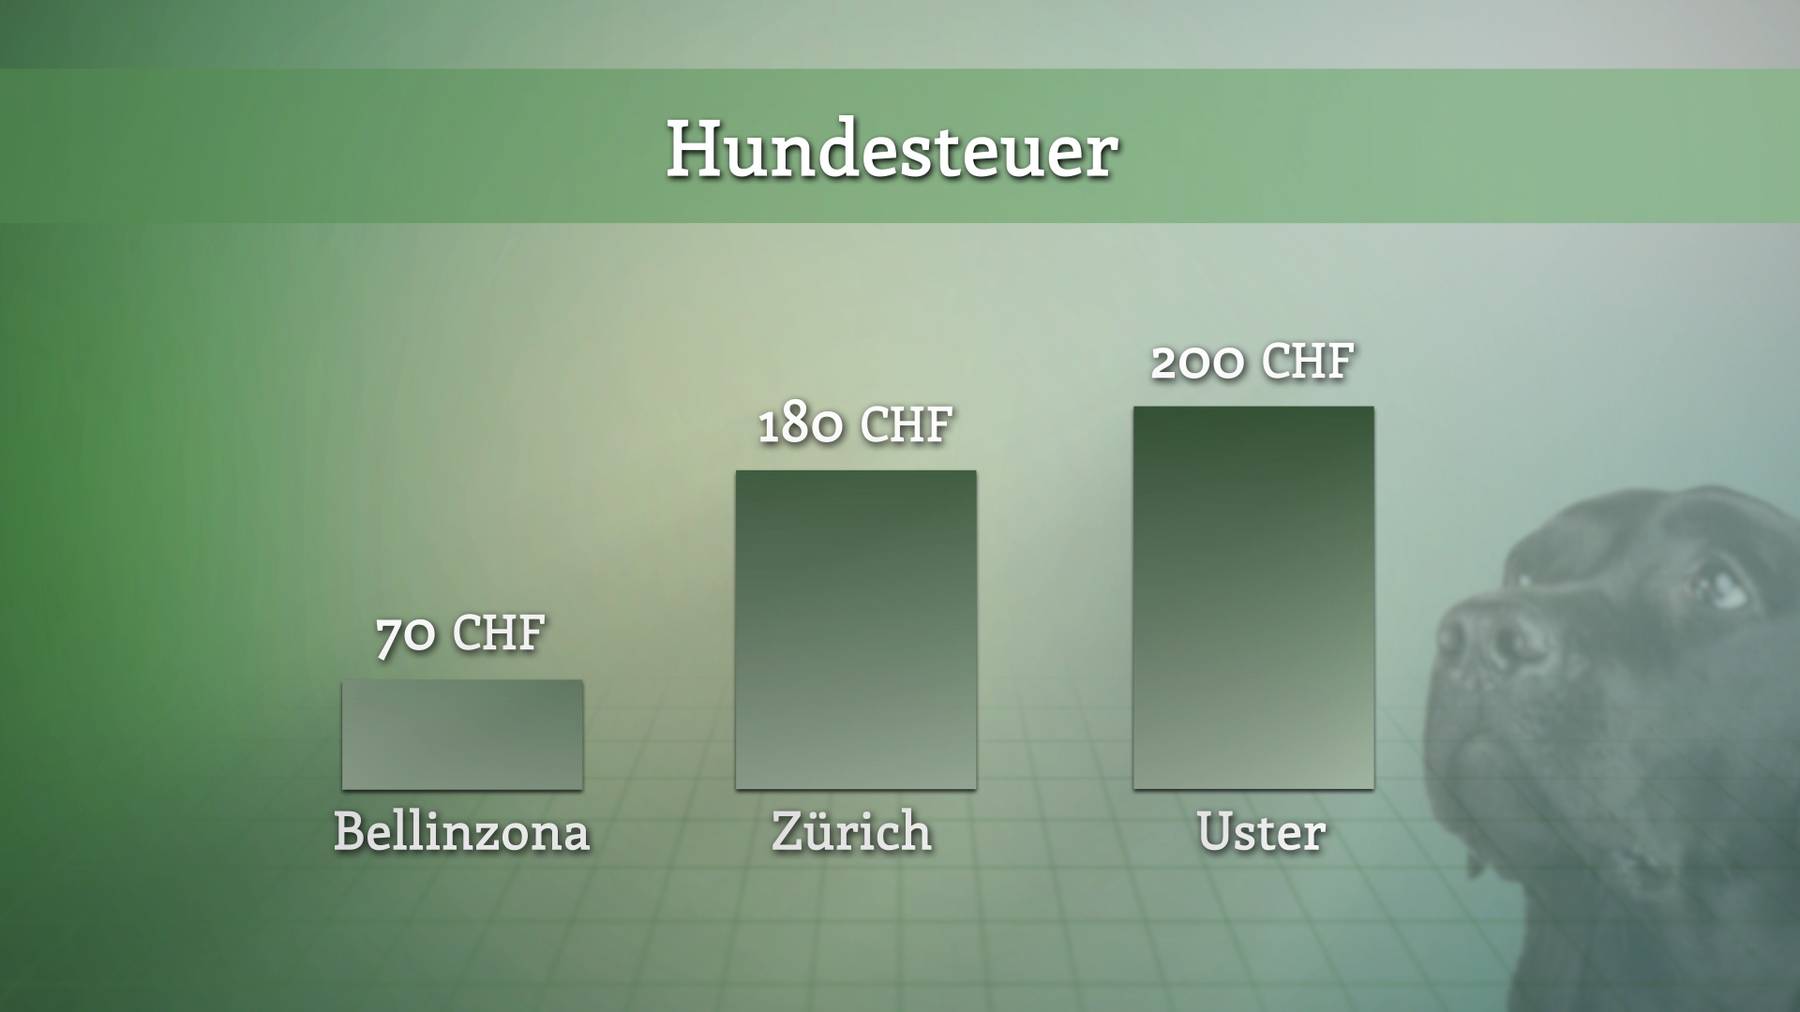 Hundesteuer – grosse regionale Unterschiede in der Schweiz.